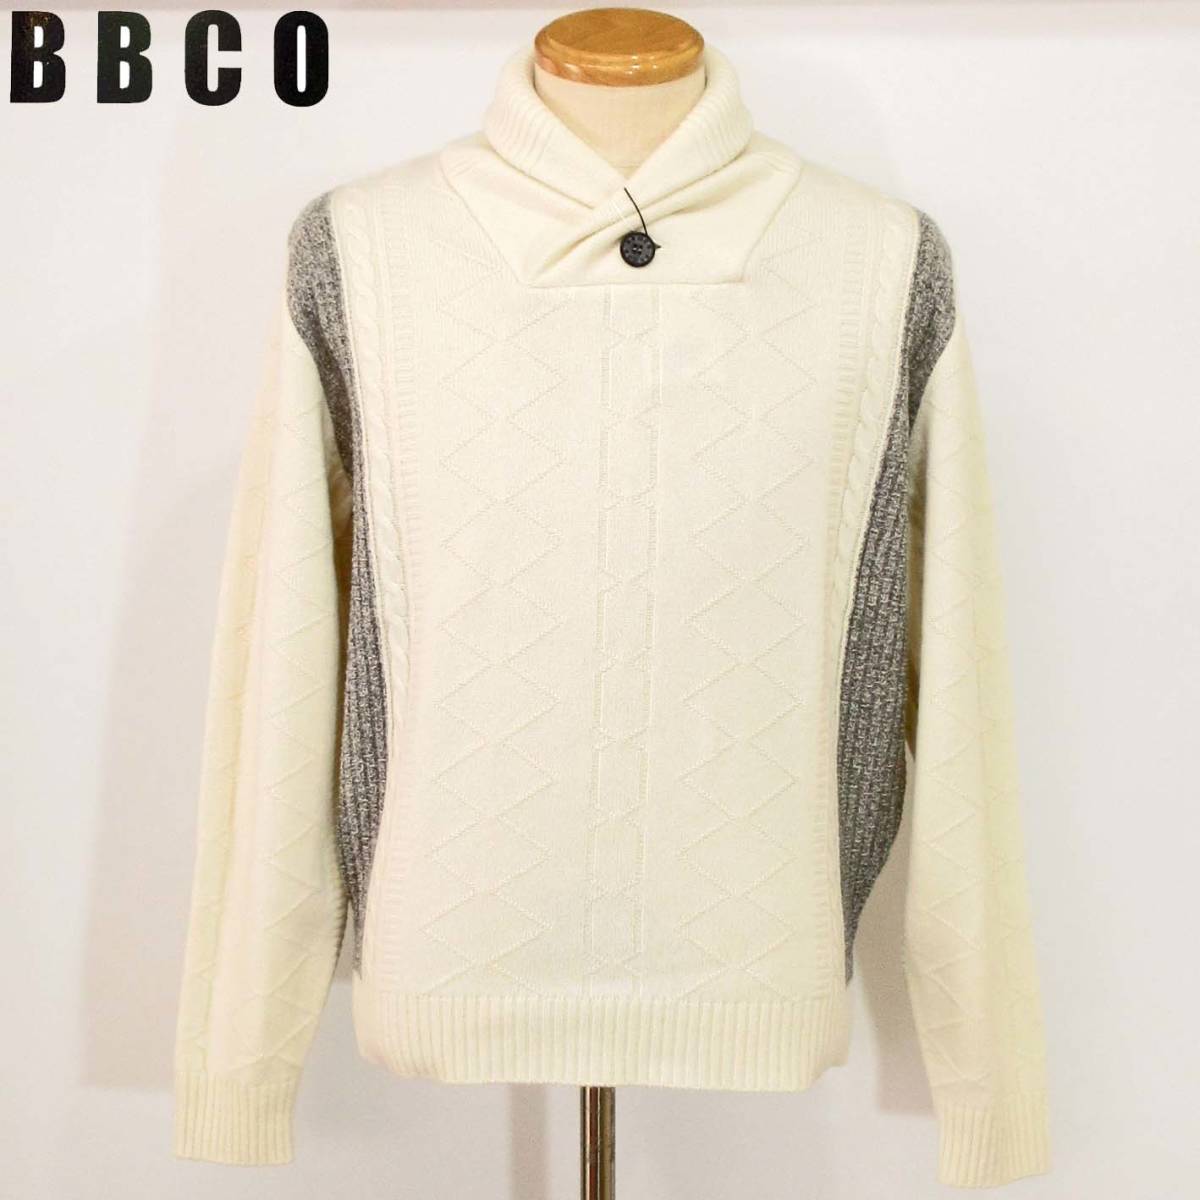 ★BBCO★SALE ショールカラーセーター【オフホワイトLL】秋冬モデル 15740201 ビビコ